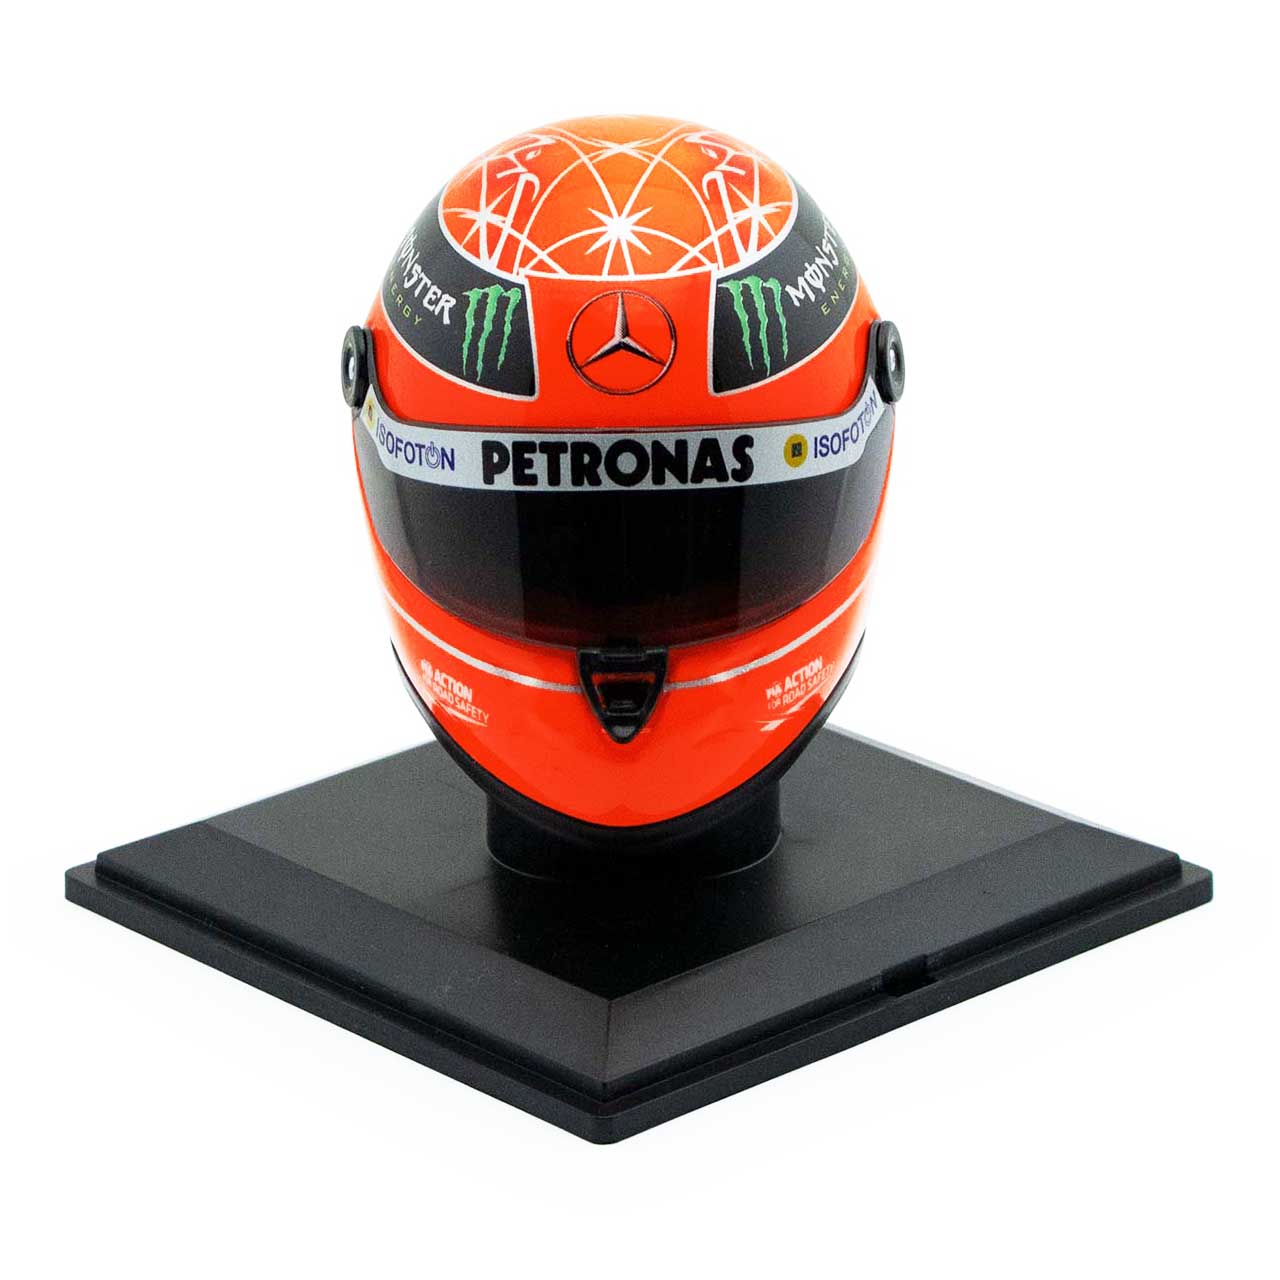 Michael Schumacher Final Helmet Gp Formula 1 2012 1:4 | eBay